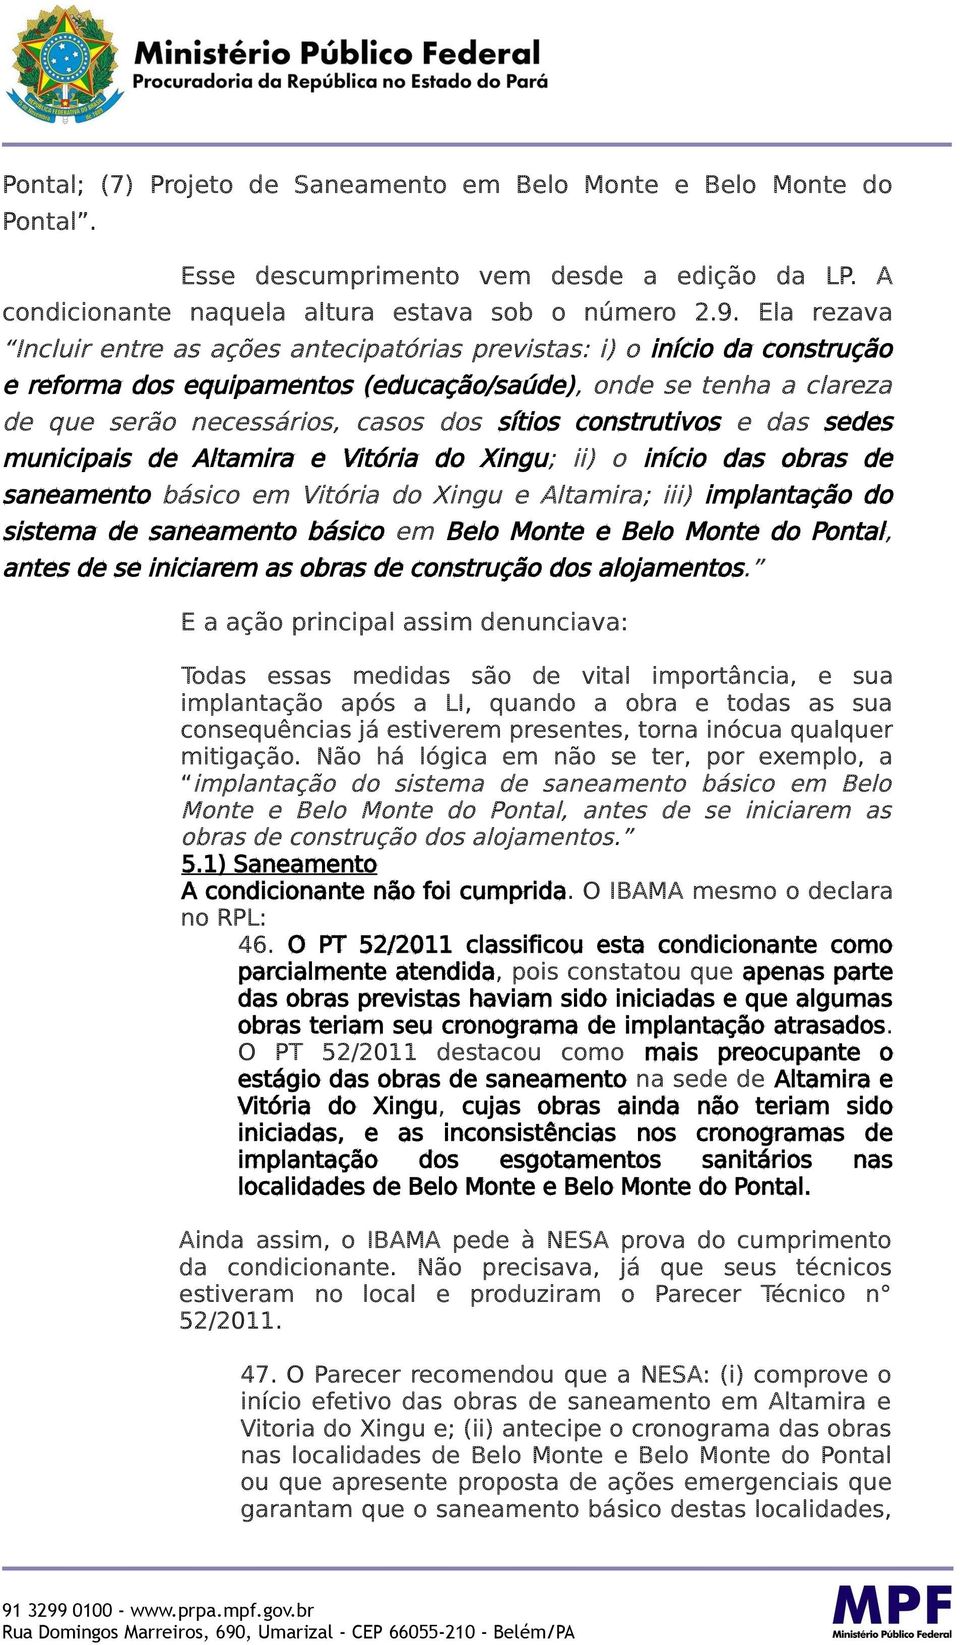 construtivos e das sedes municipais de Altamira e Vitória do Xingu; ii) o início das obras de saneamento básico em Vitória do Xingu e Altamira; iii) implantação do sistema de saneamento básico em